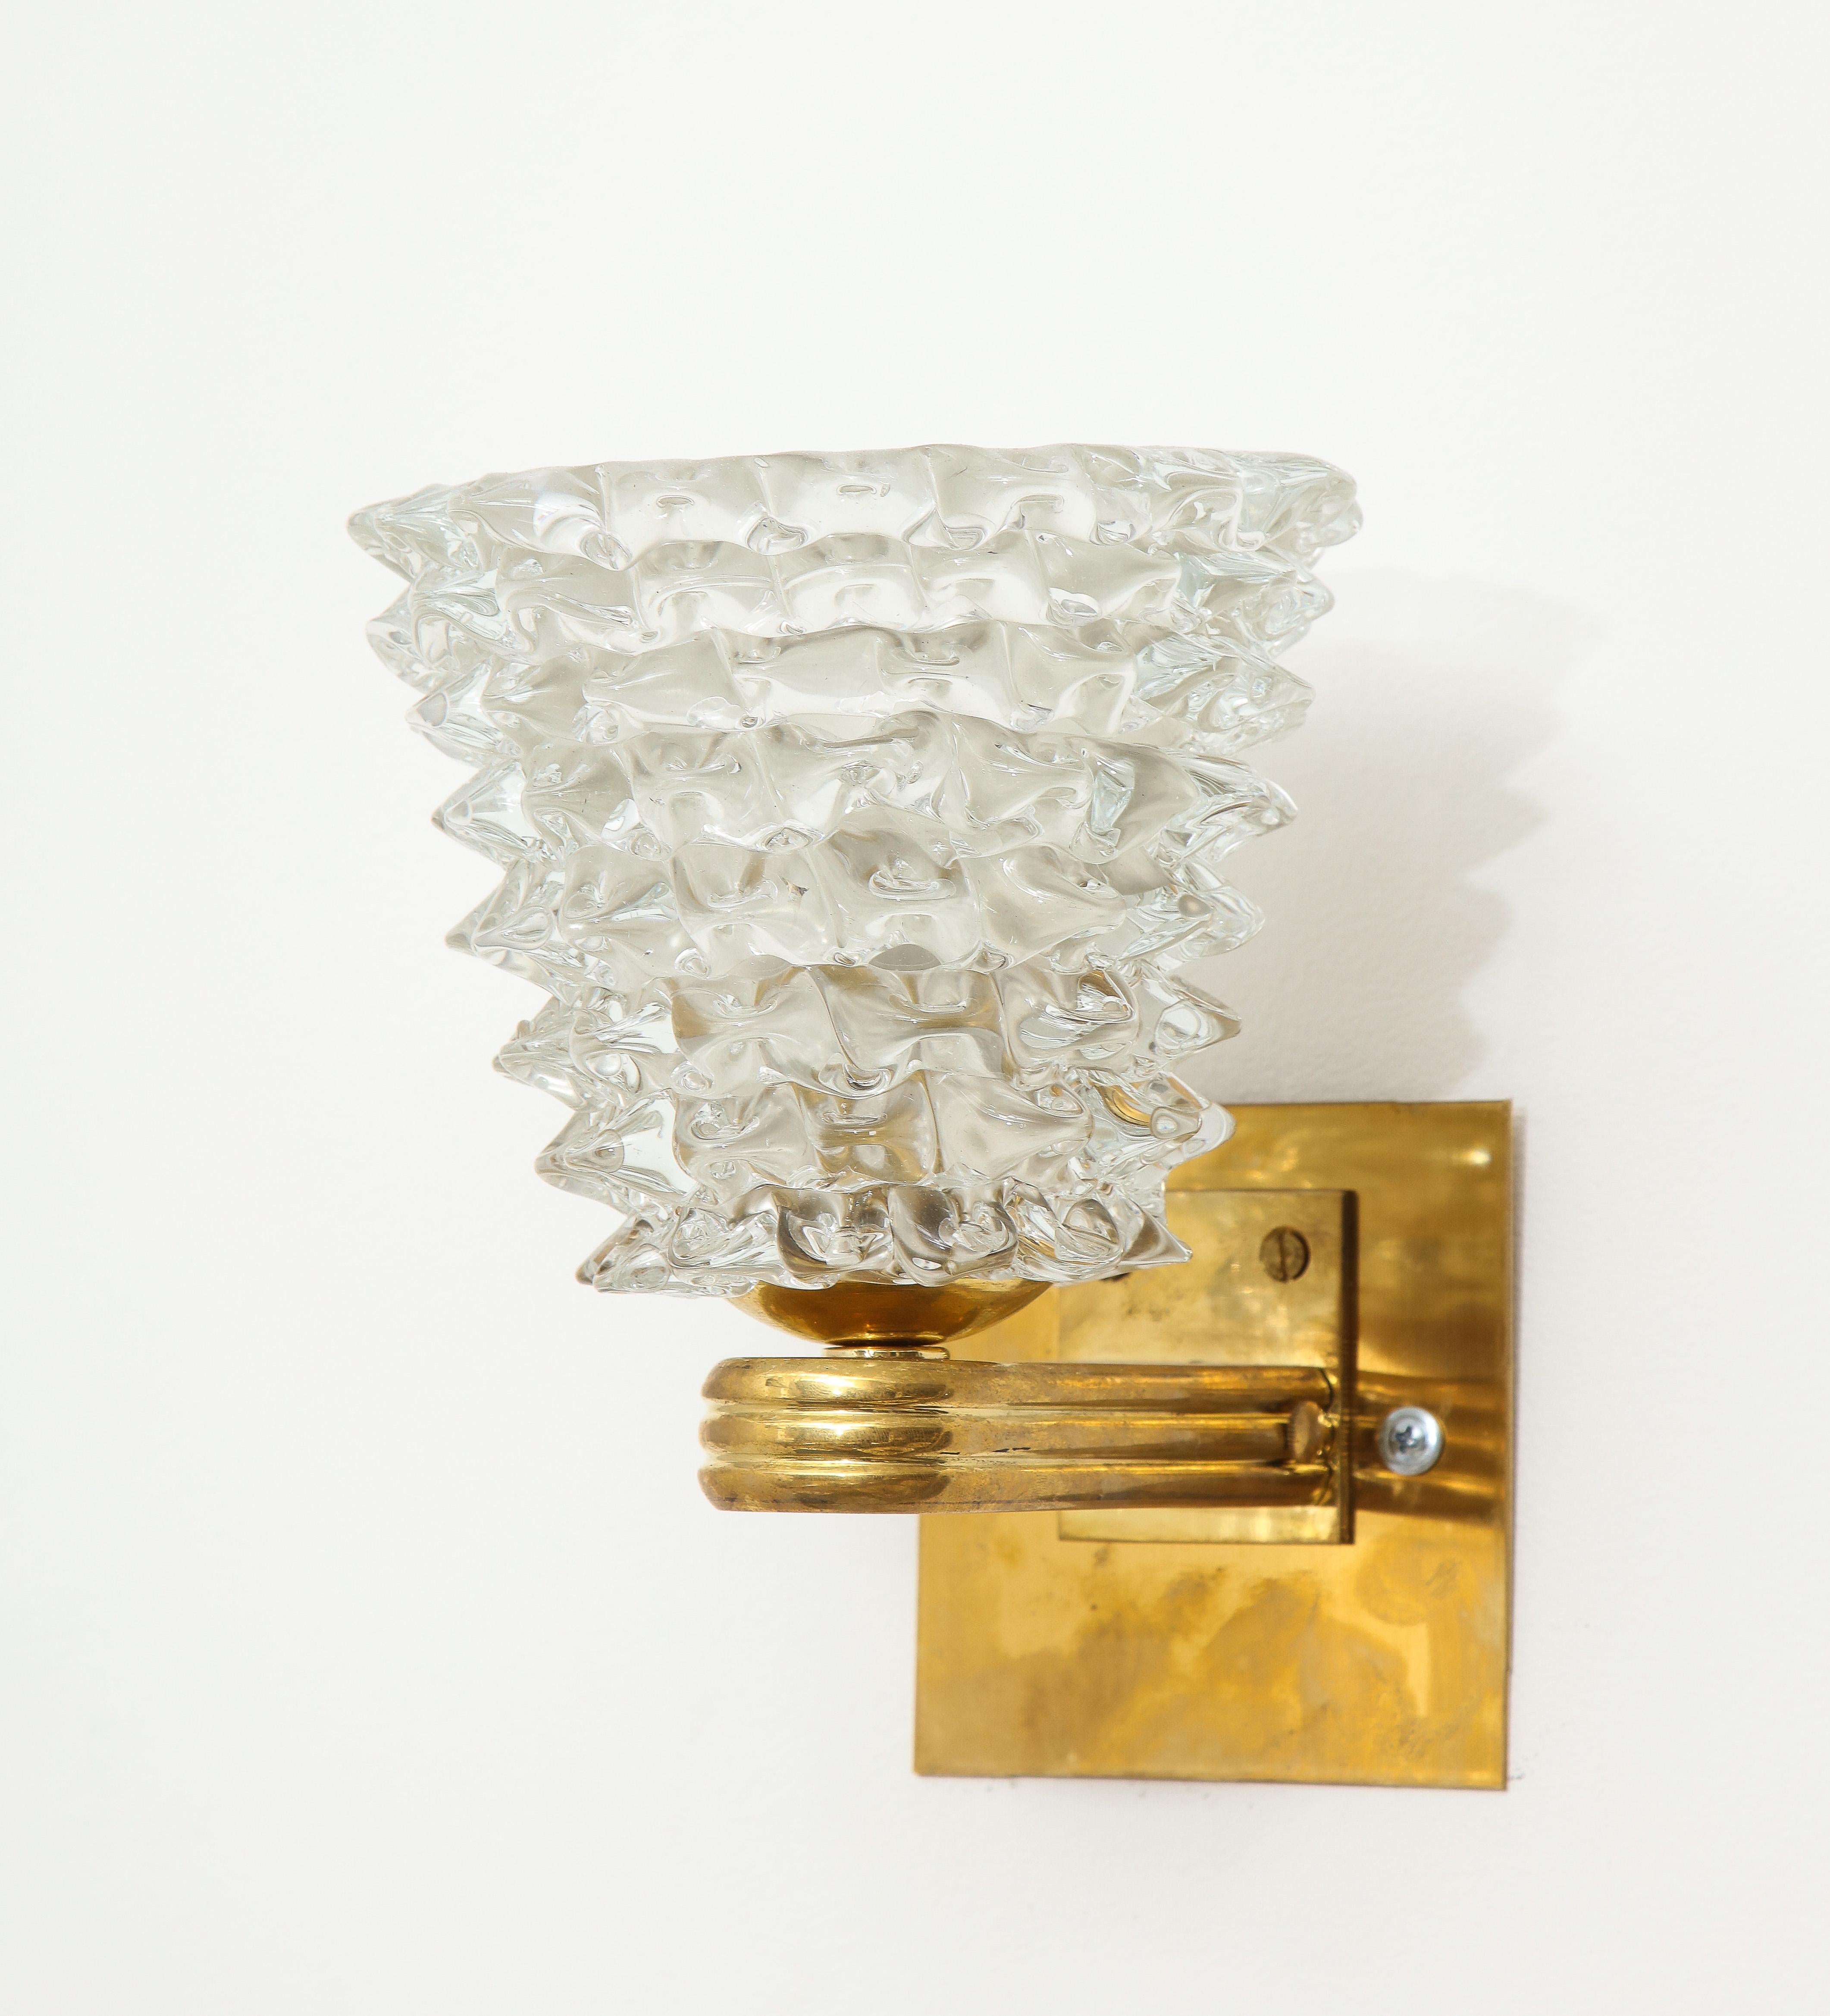 Contemporary Pair of Bespoke Murano Glass Sconces